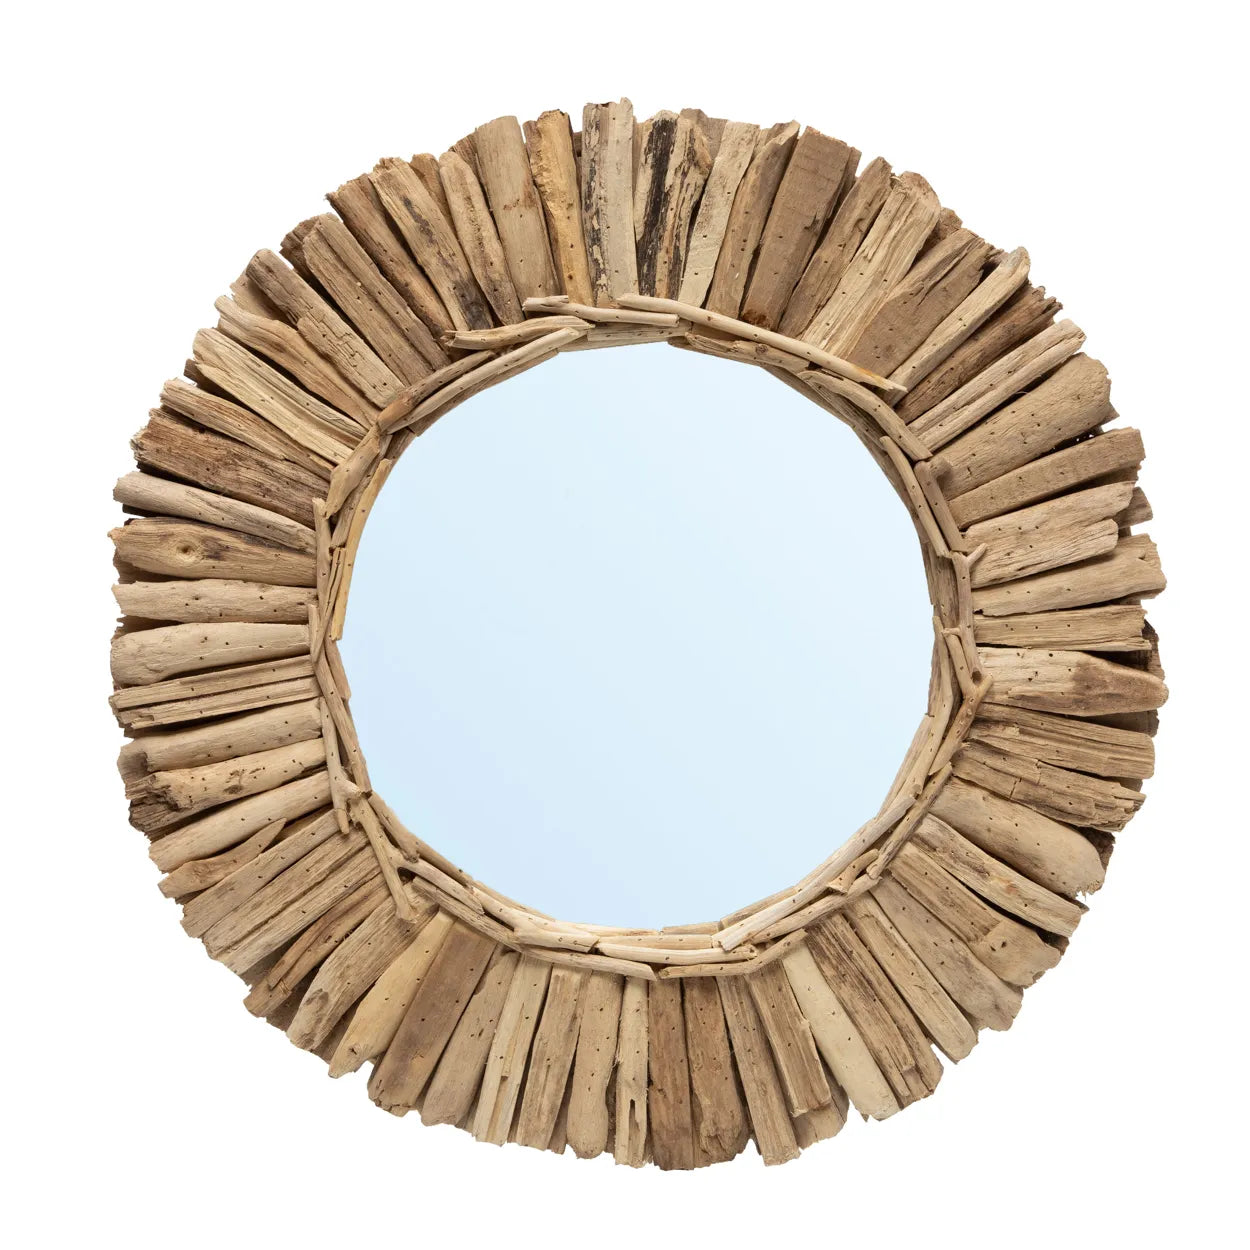 Cudillero Driftwood Mirror - Round Glass Mirror